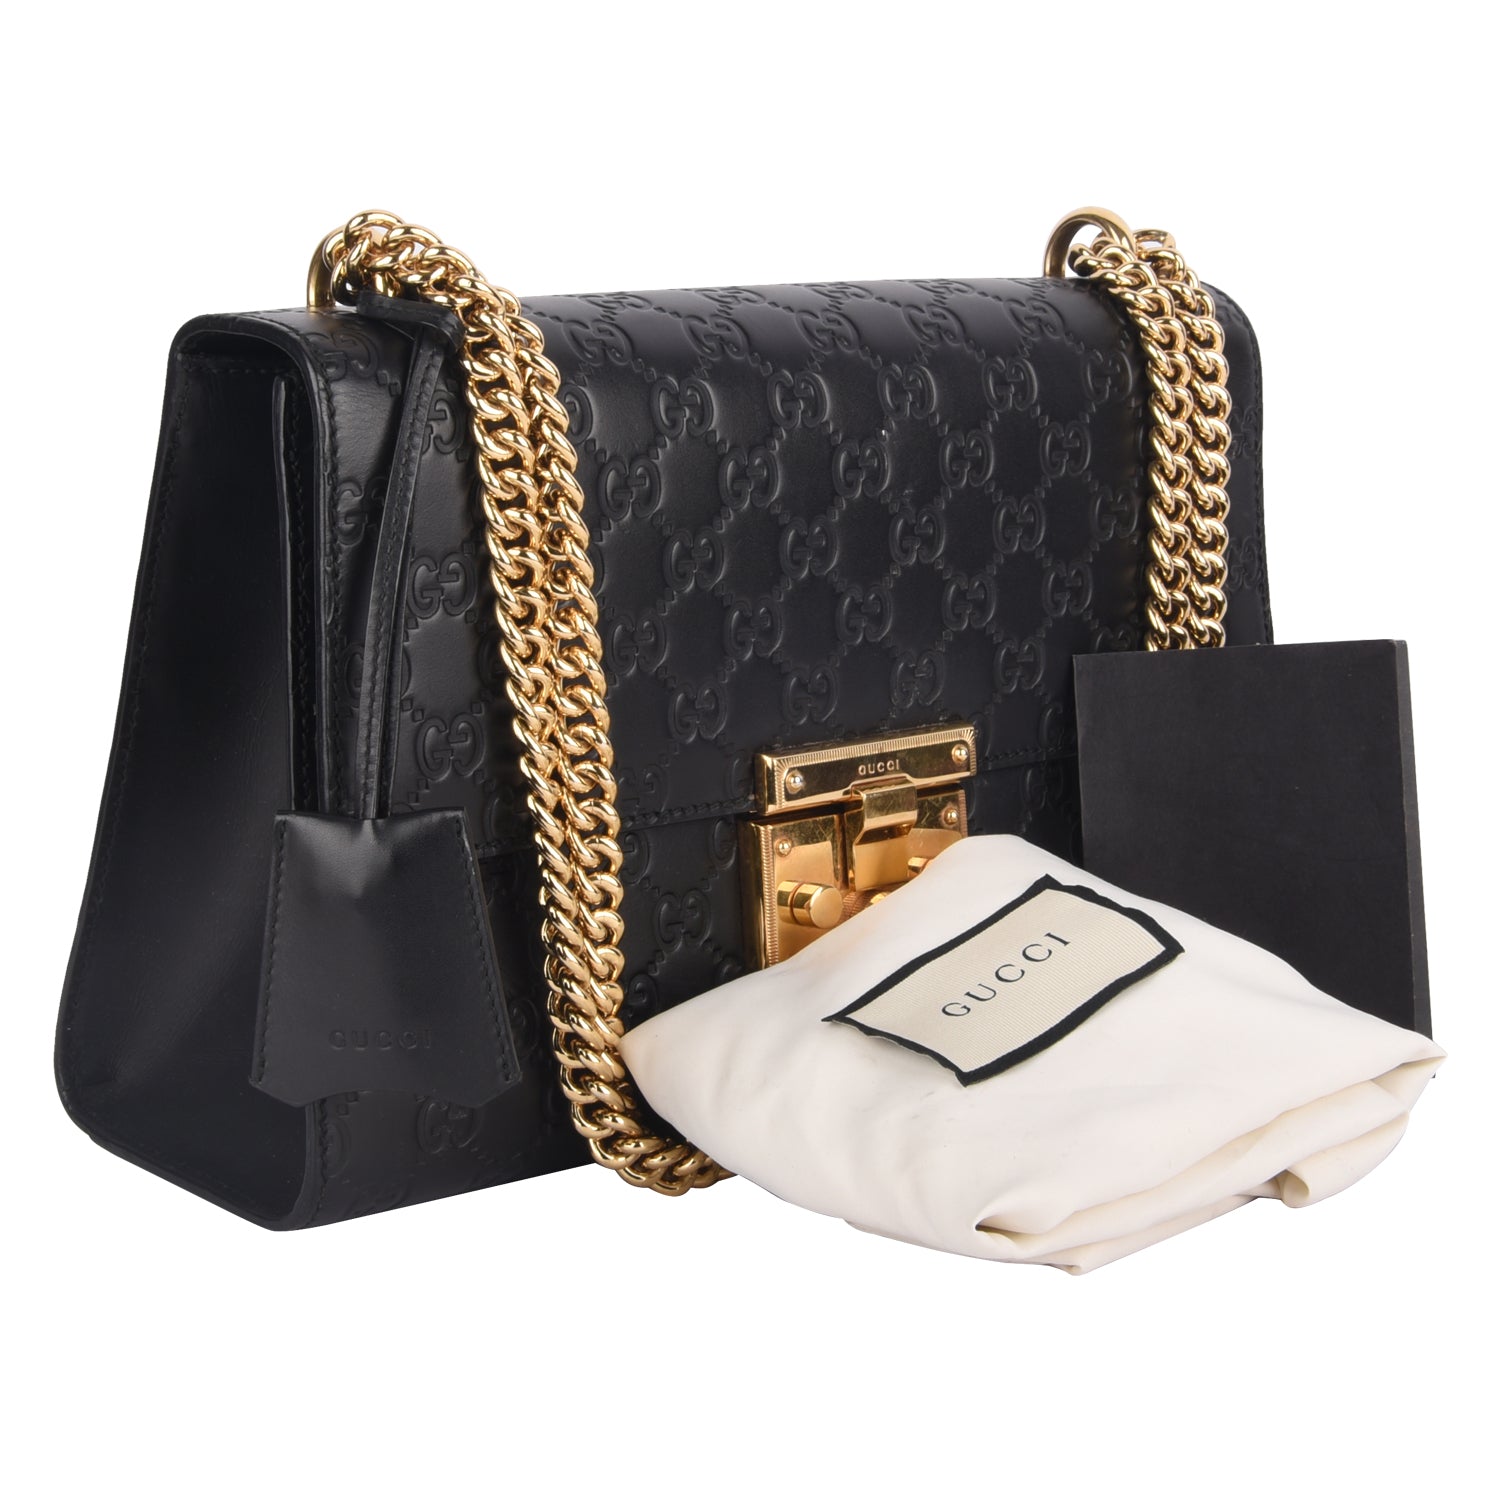 Guccissima Padlock Black Shoulder Medium Bag